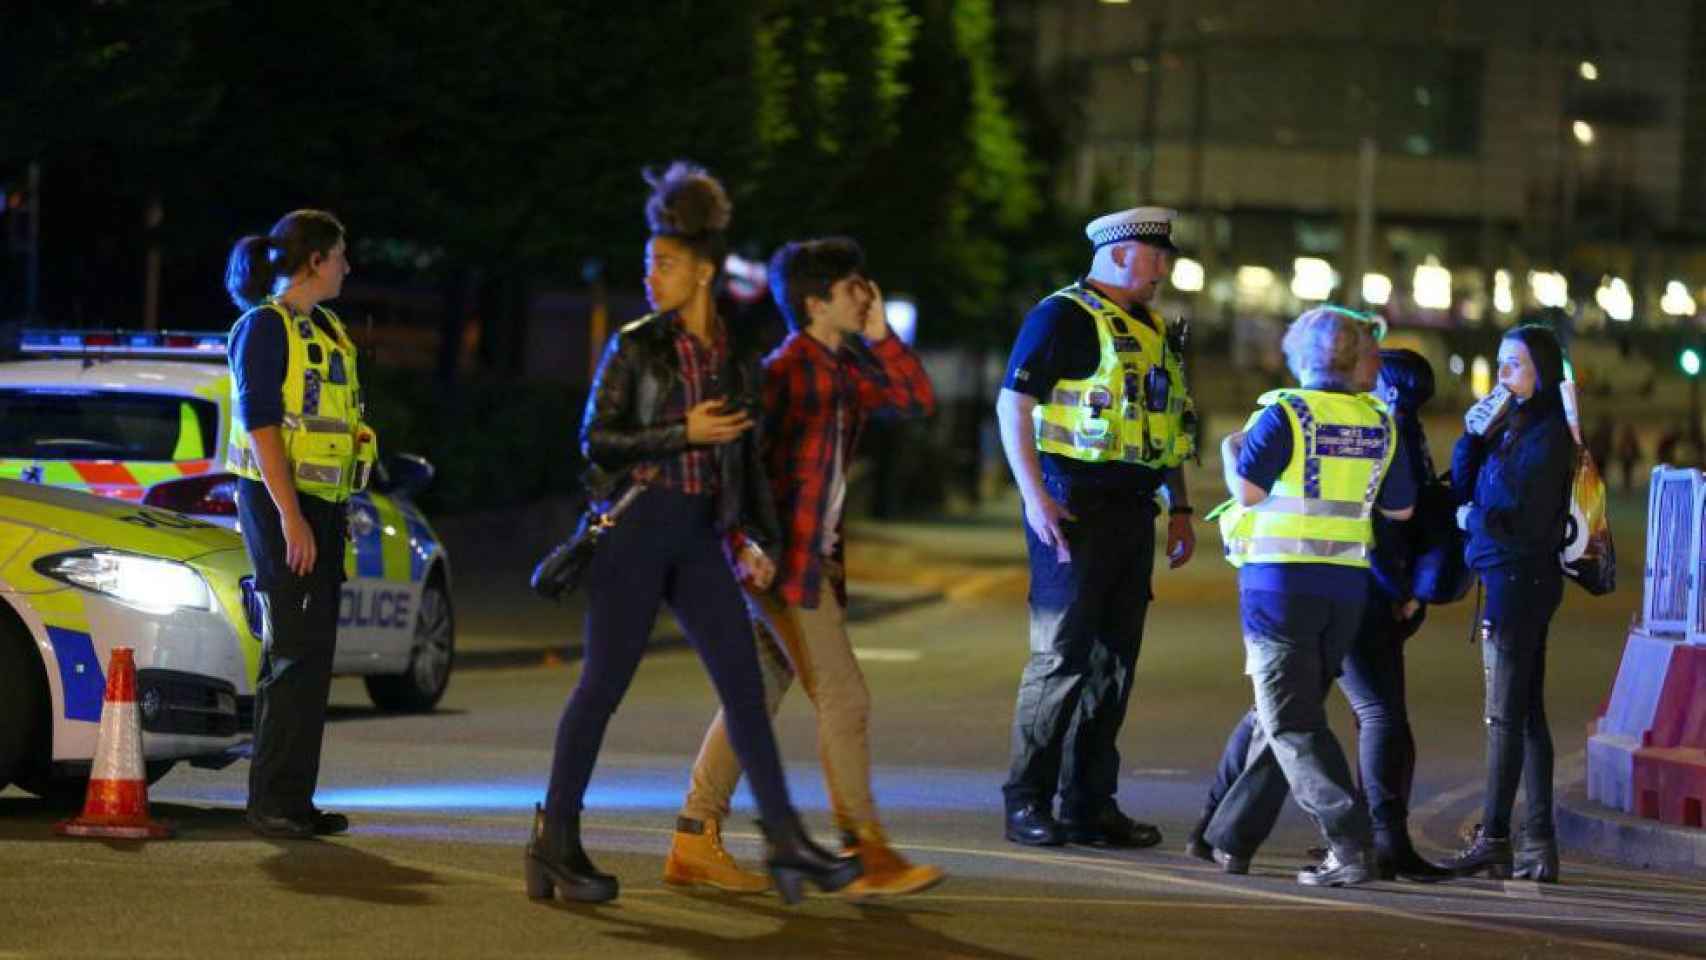 Críticas al Canal 24 Horas por informar tarde y mal sobre el atentado en Manchester